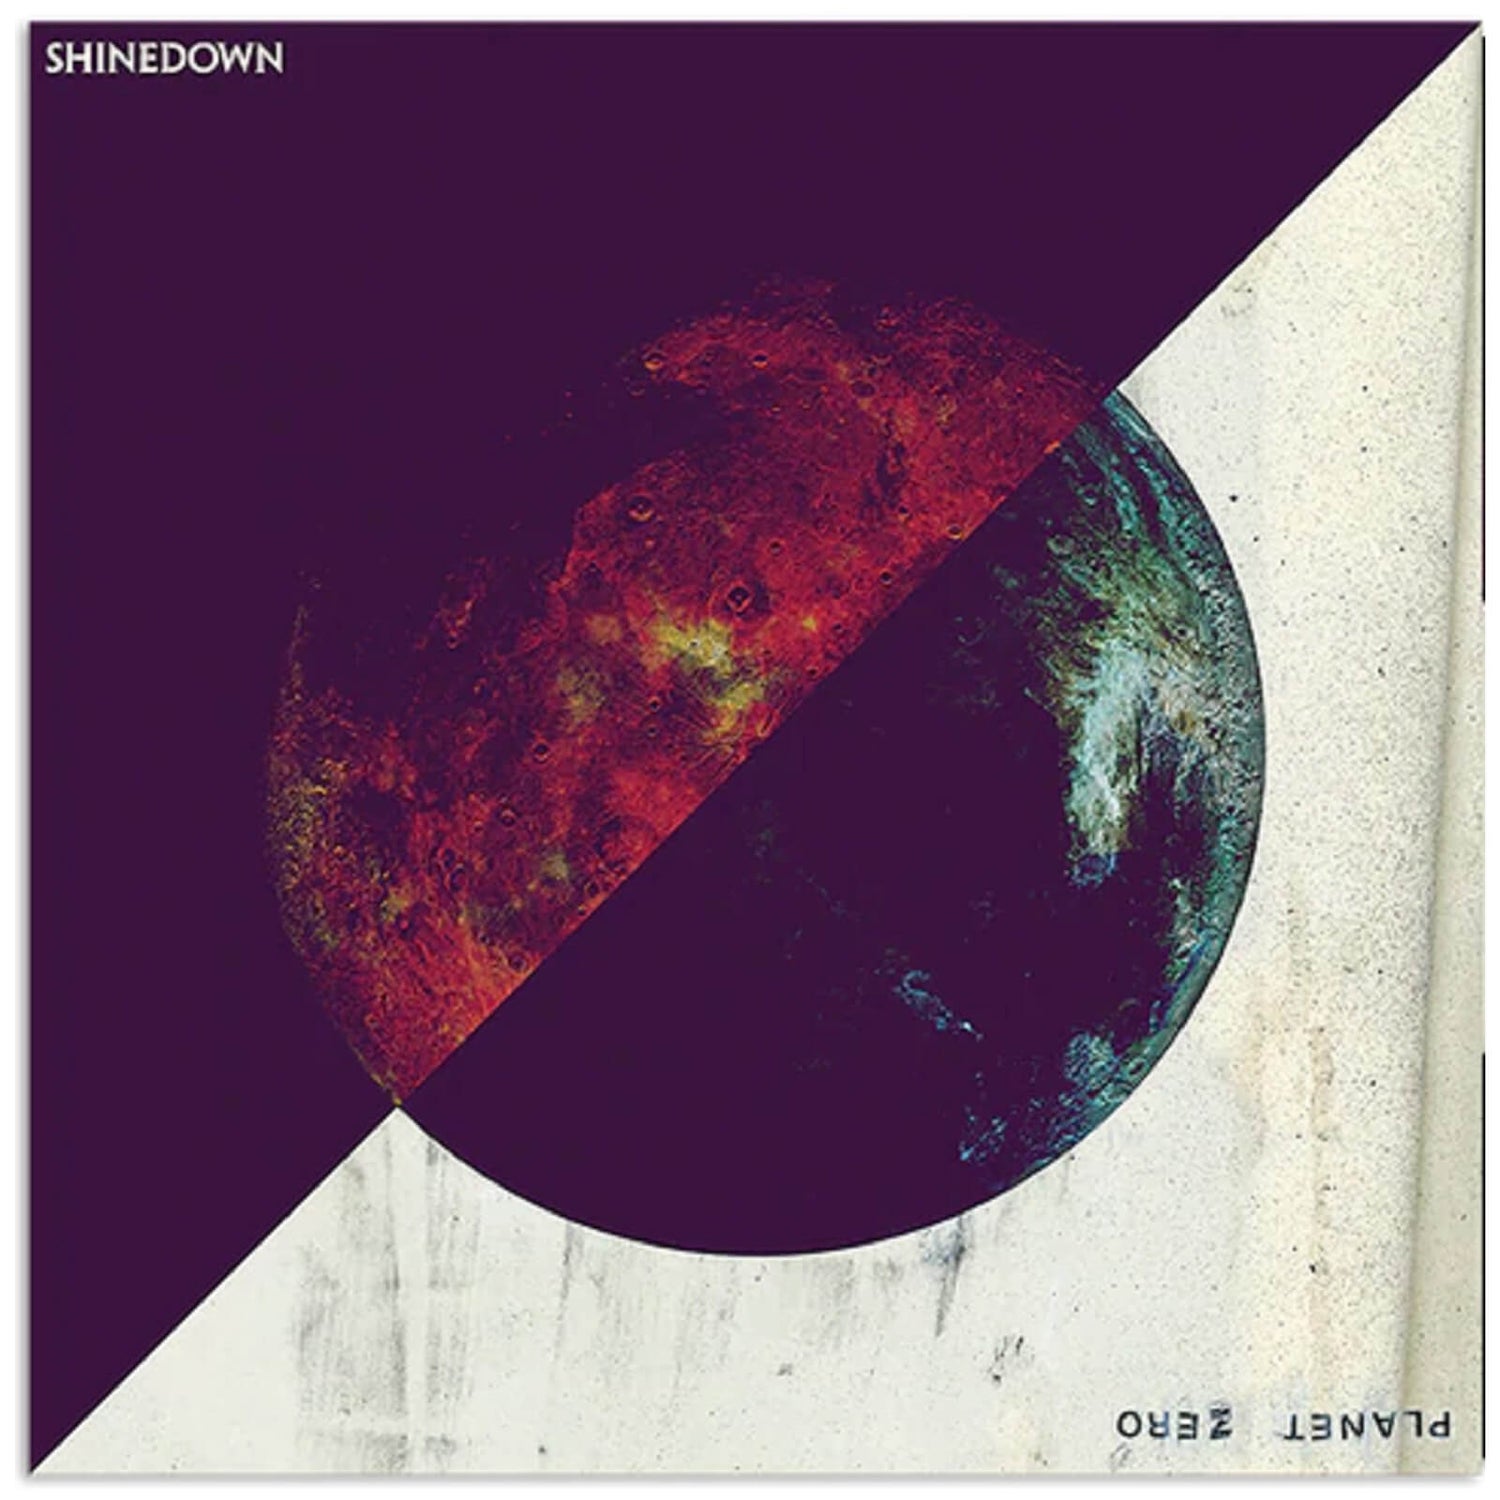 Shinedown - Planet Zero Vinyl 2LP